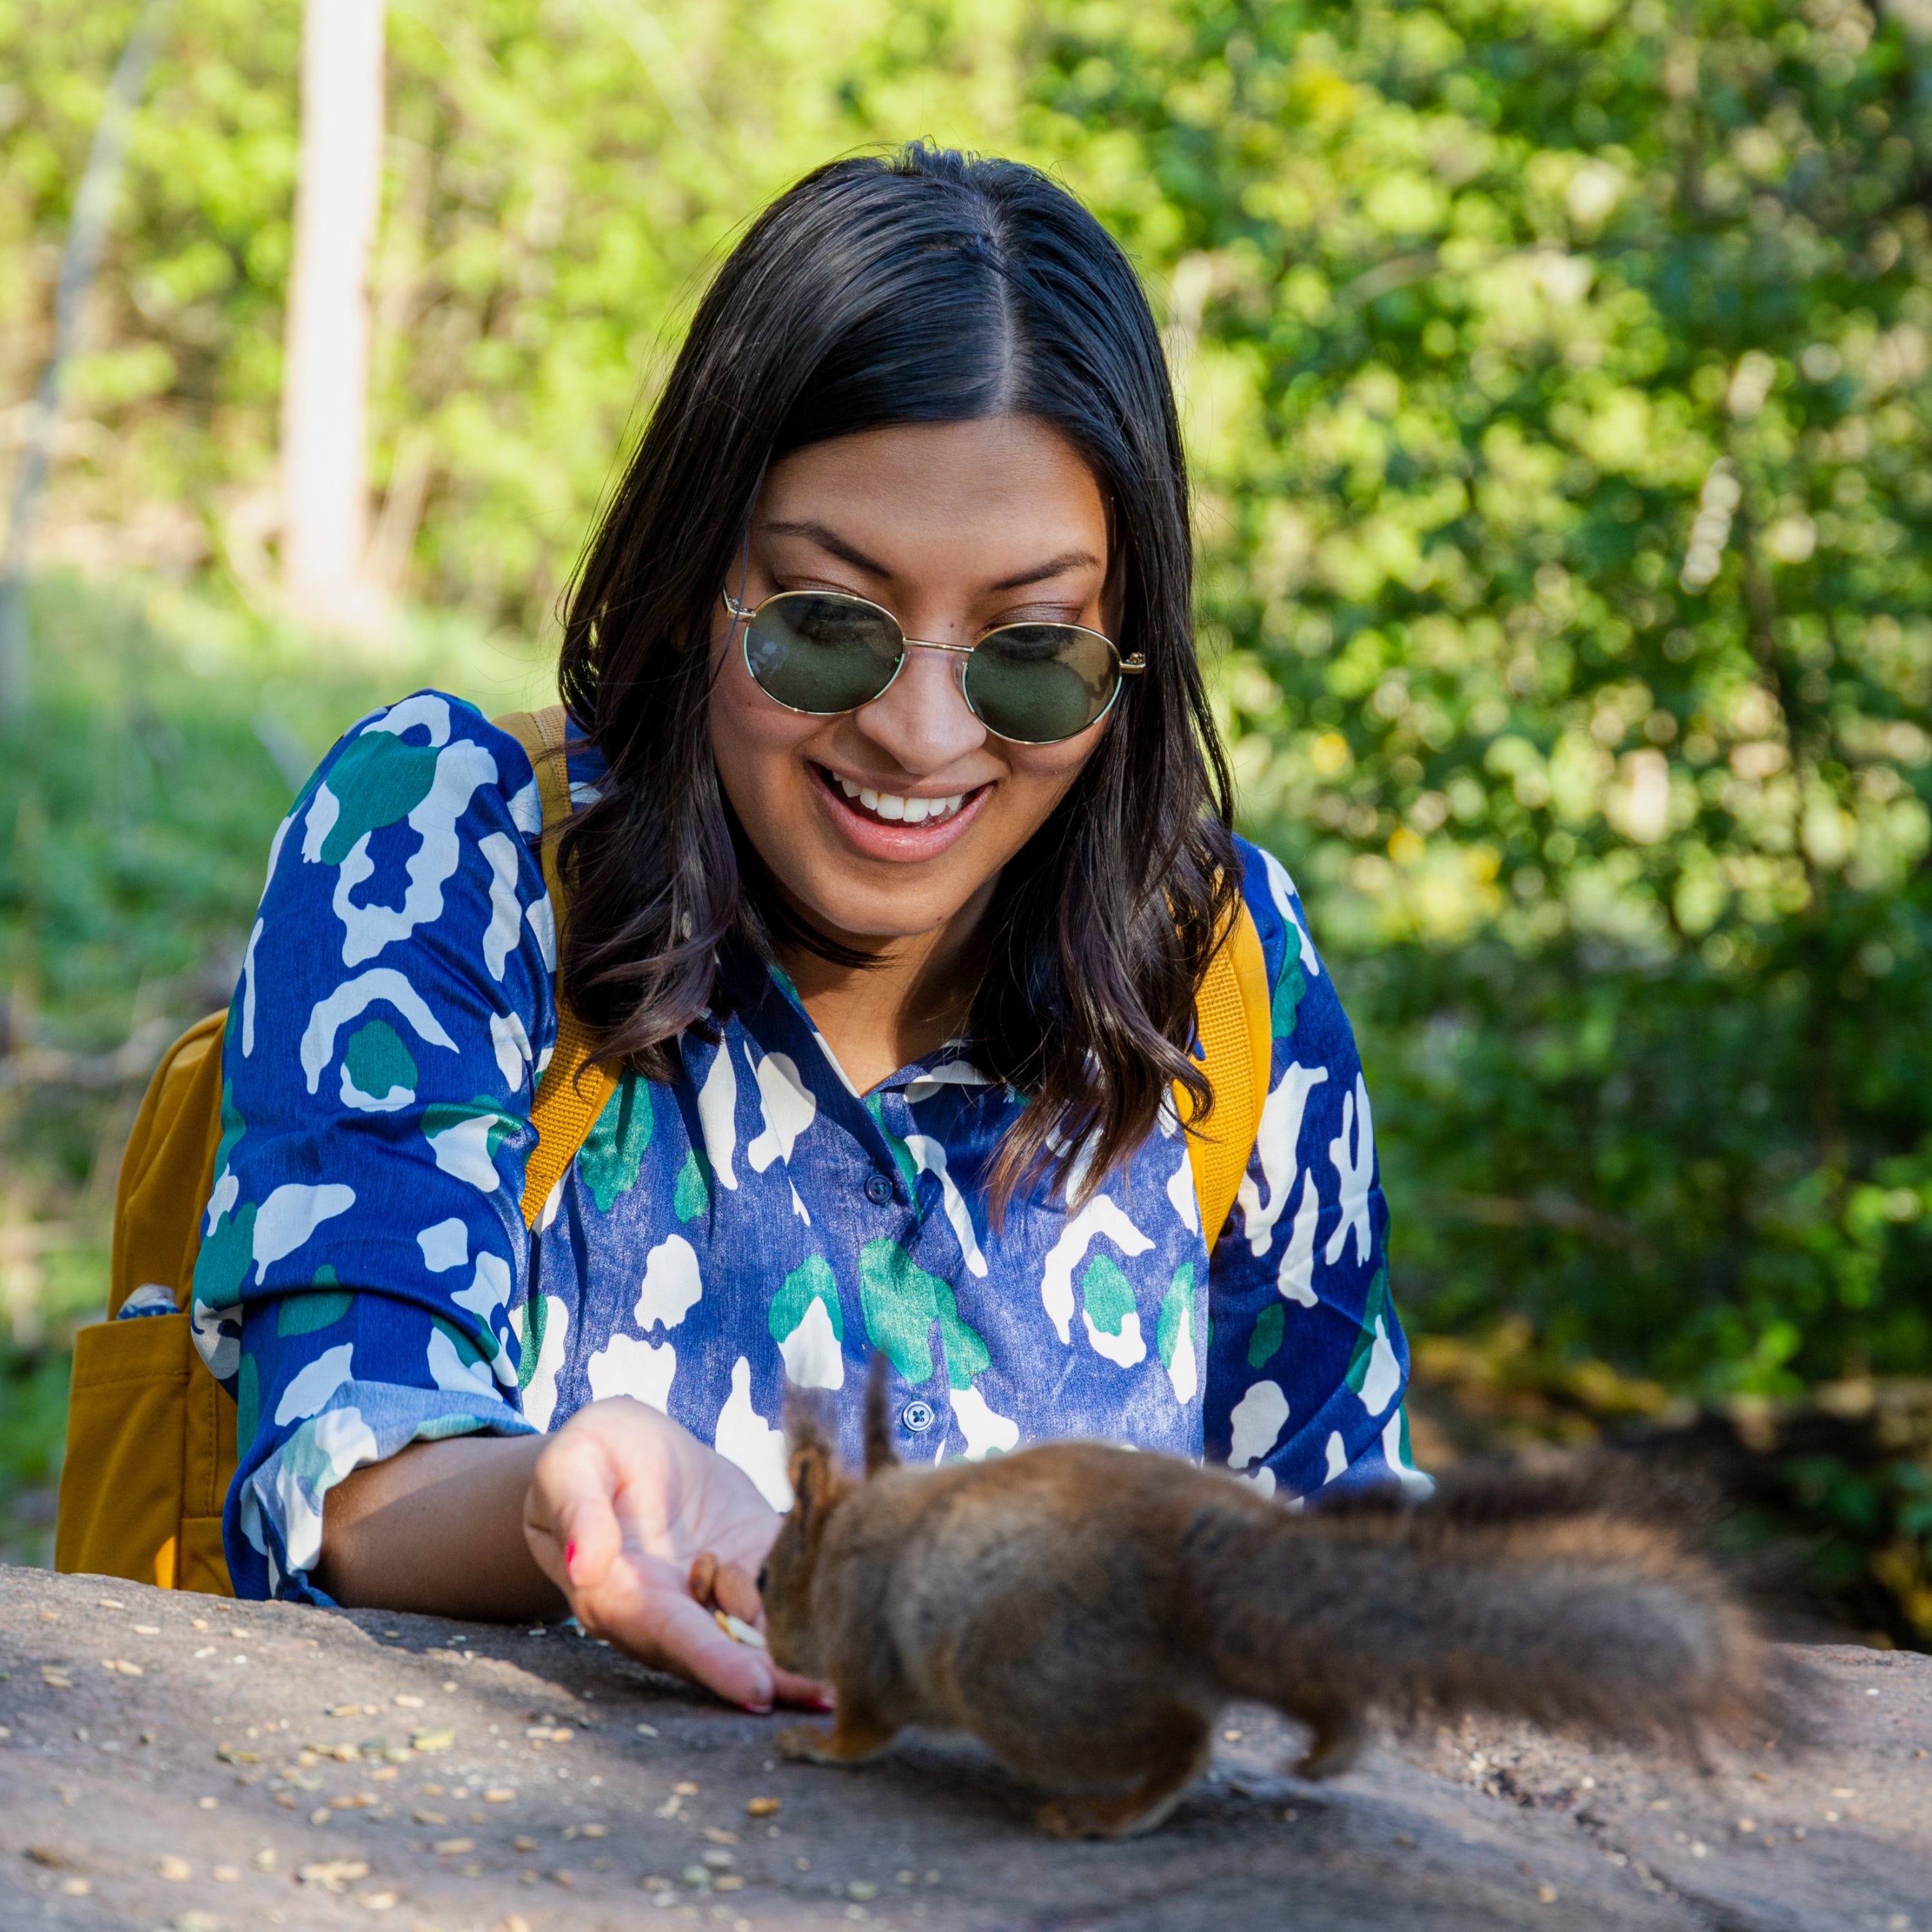 Megha Goswami füttert draußen ein Eichhörnchen.